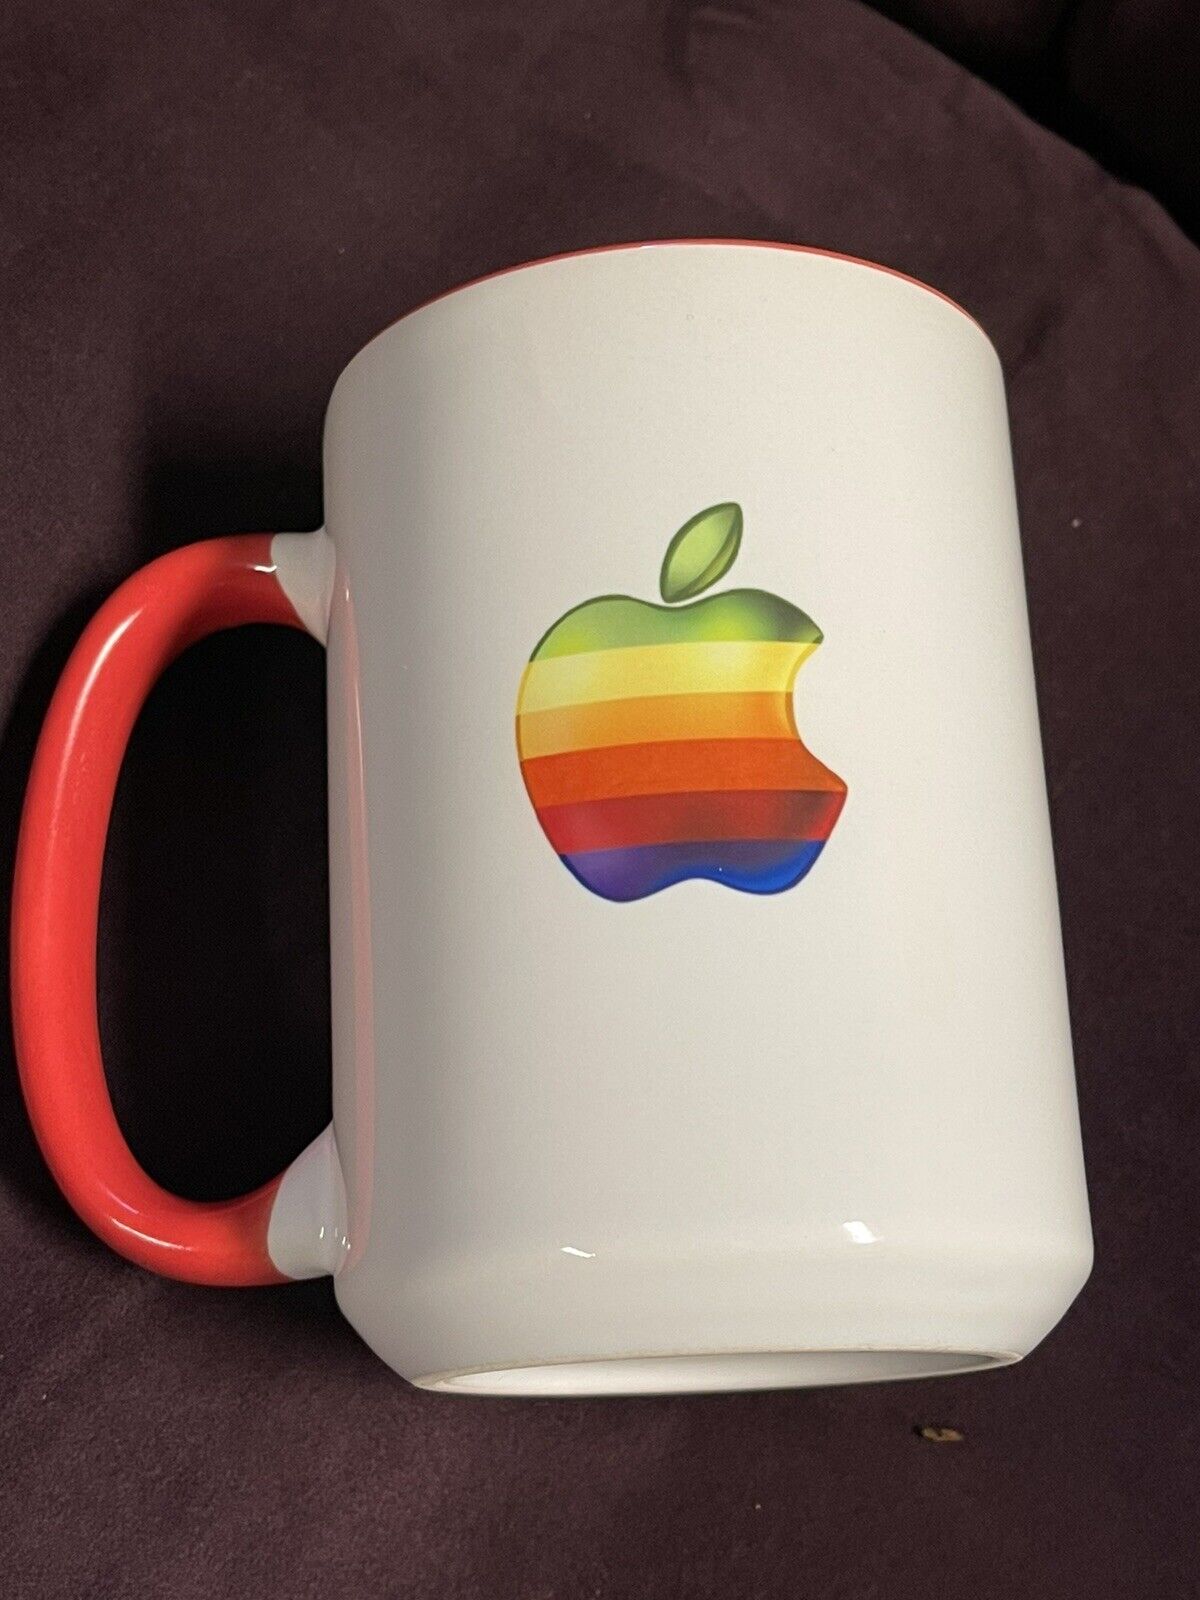 Colorful Apple logo mug 15 oz printed Apple Computer